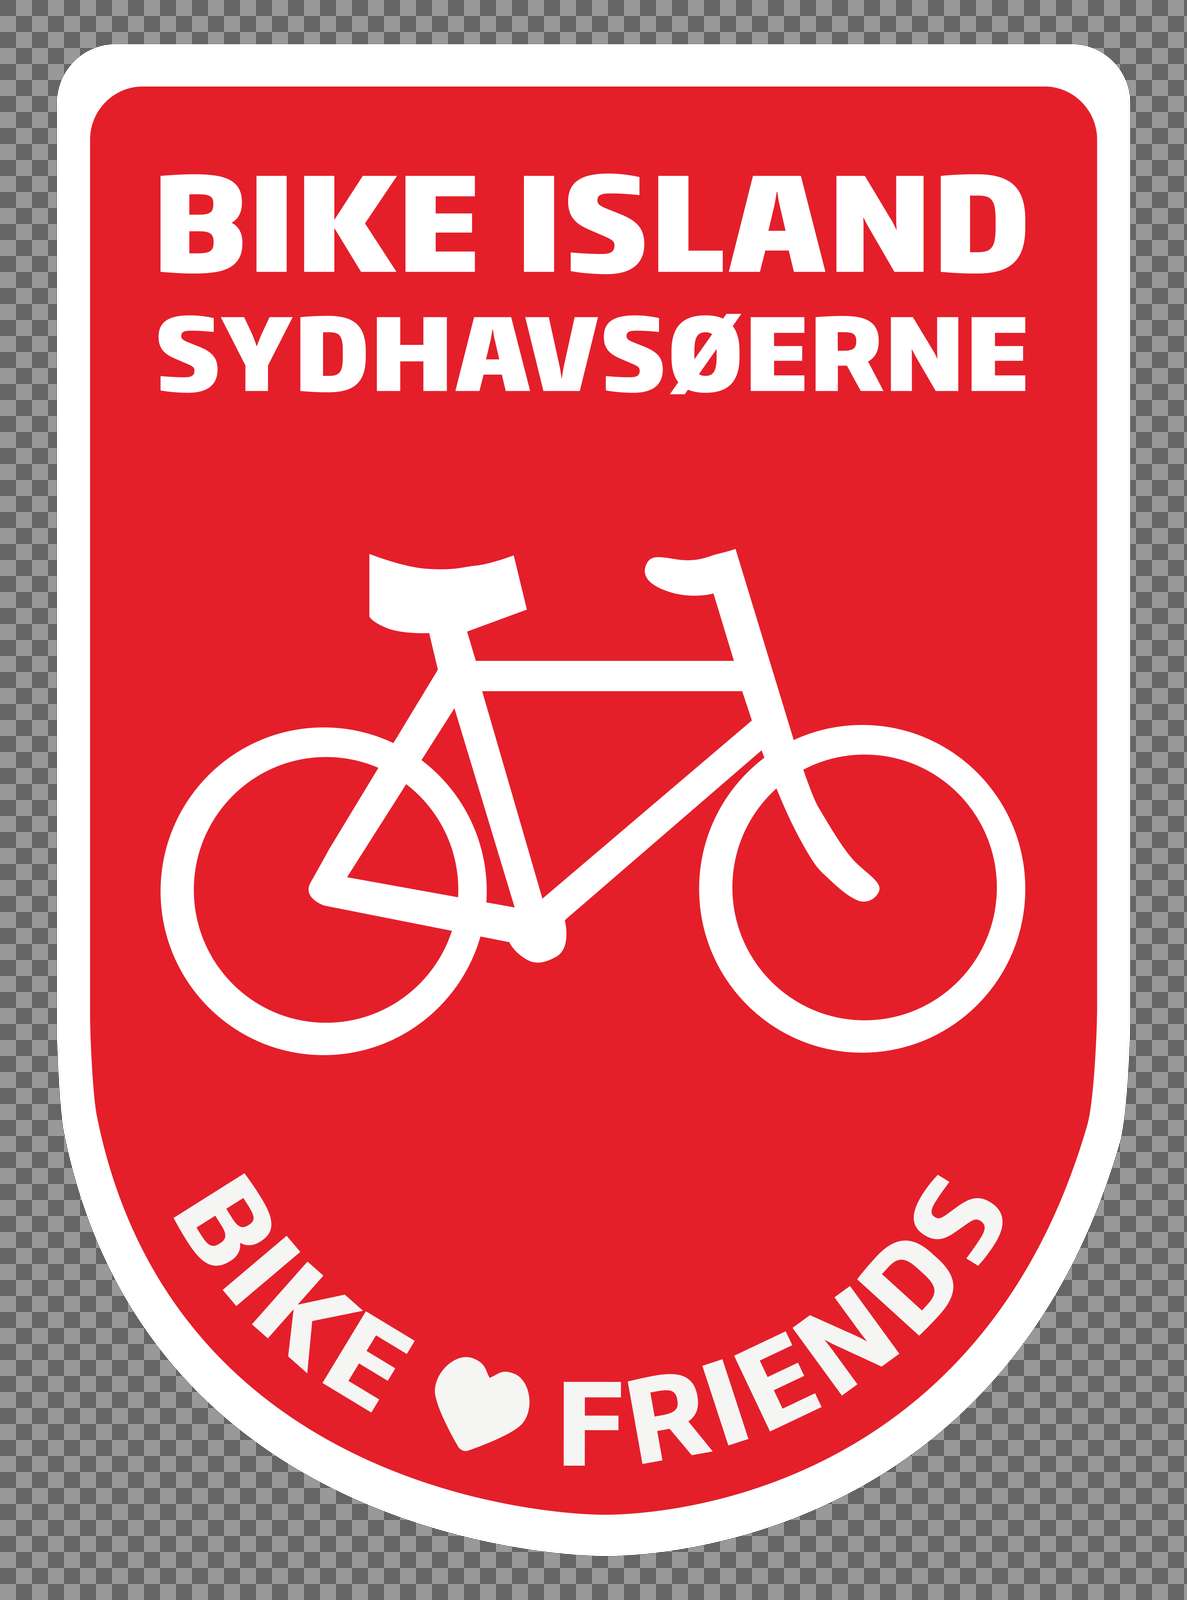 Bike_Friends_Sydhavsøerne_20-21_outline